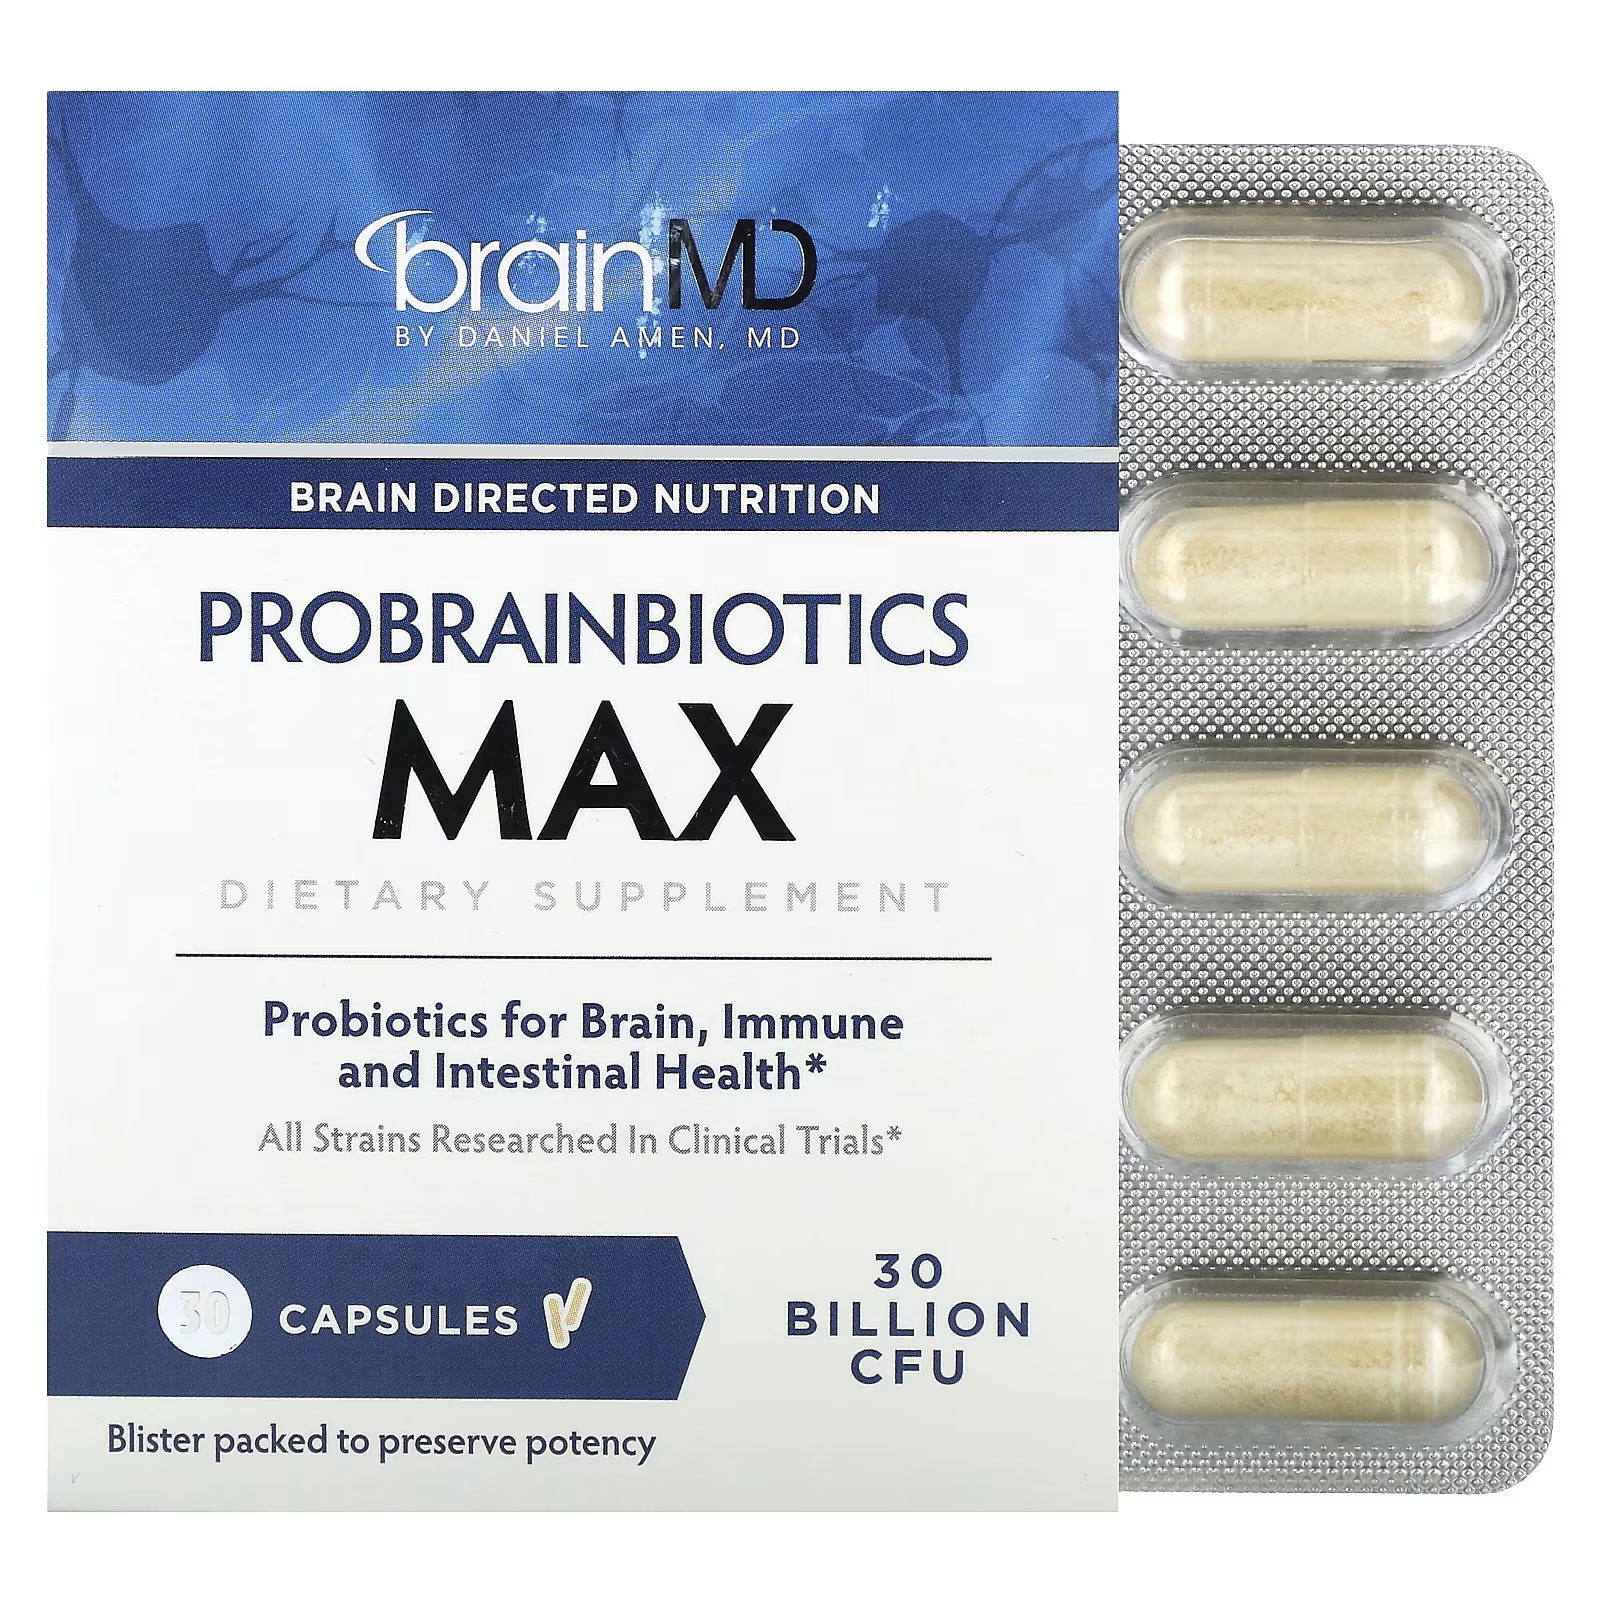 цена Пробейнбиотики BrainMD, 30 капсул